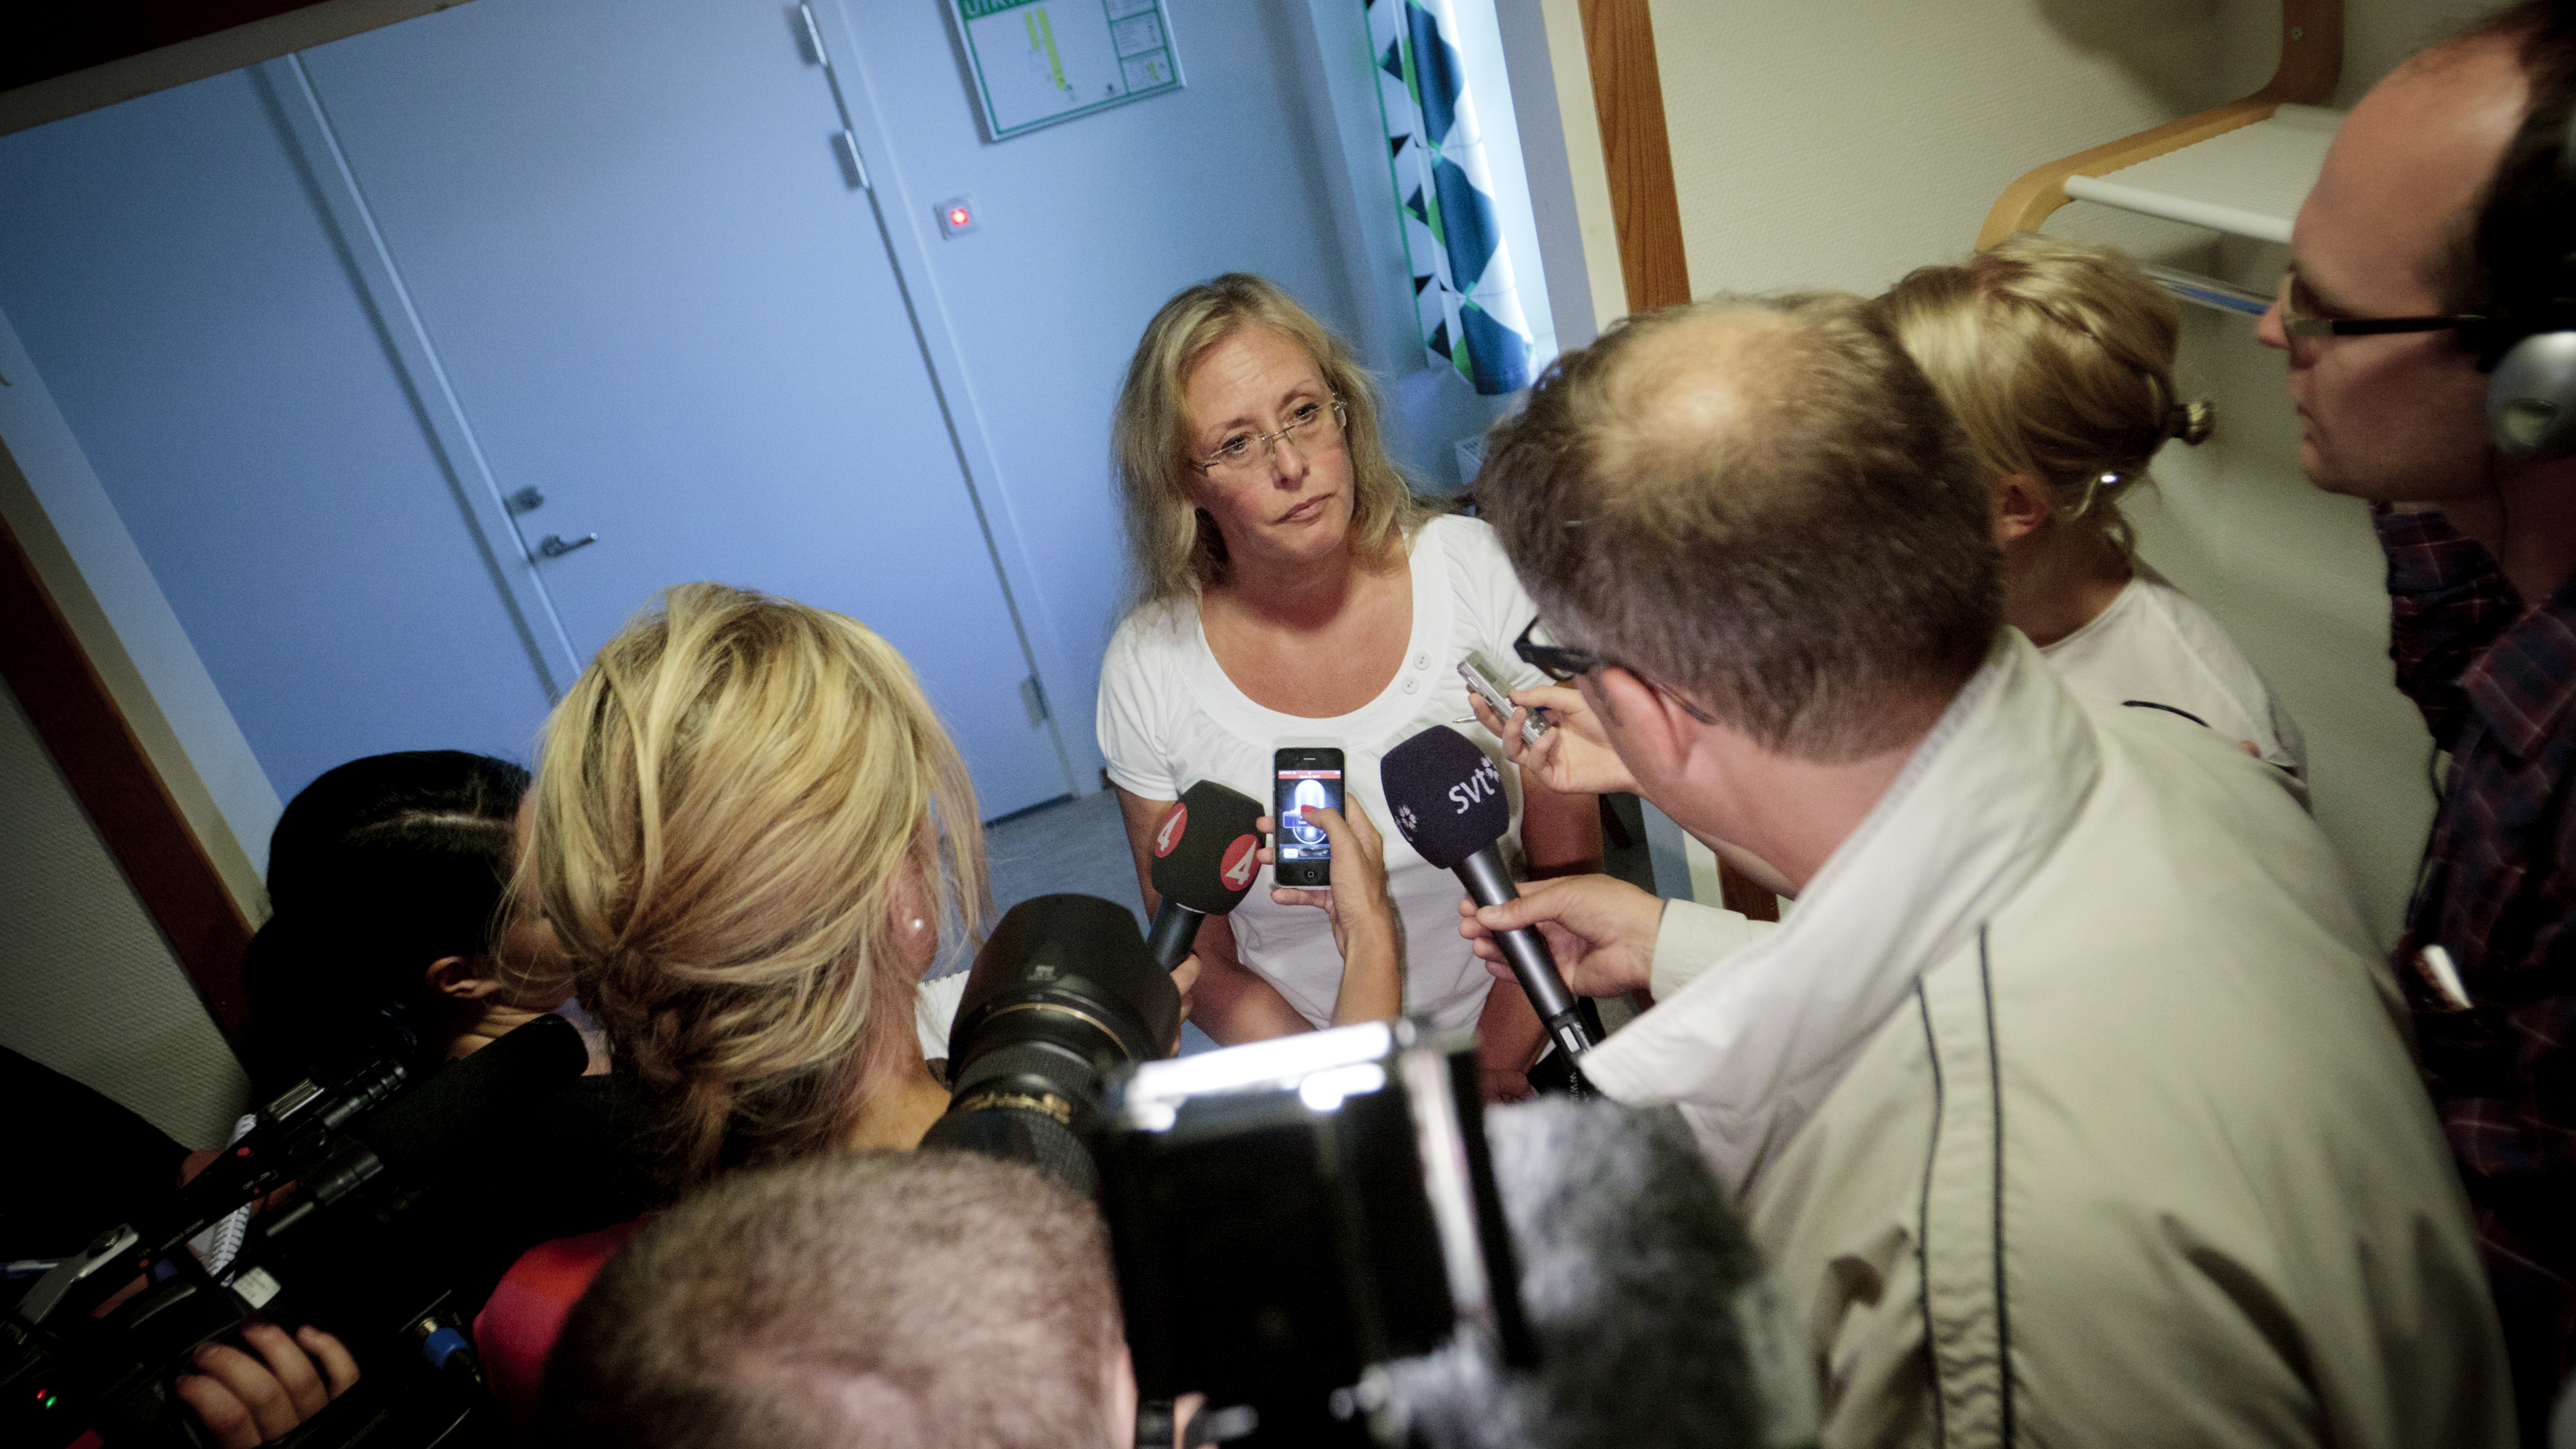 Polisens talesperson Inga-Lena Jonasson berättar efter häktningsförhandlingarna om de detaljer polisen kan släppa. I förmiddags hölls häktningsförhandling om knivmordet på en sjuårig pojke i Umeå i söndags. En 53-årig man som är anhörig till barnet har be